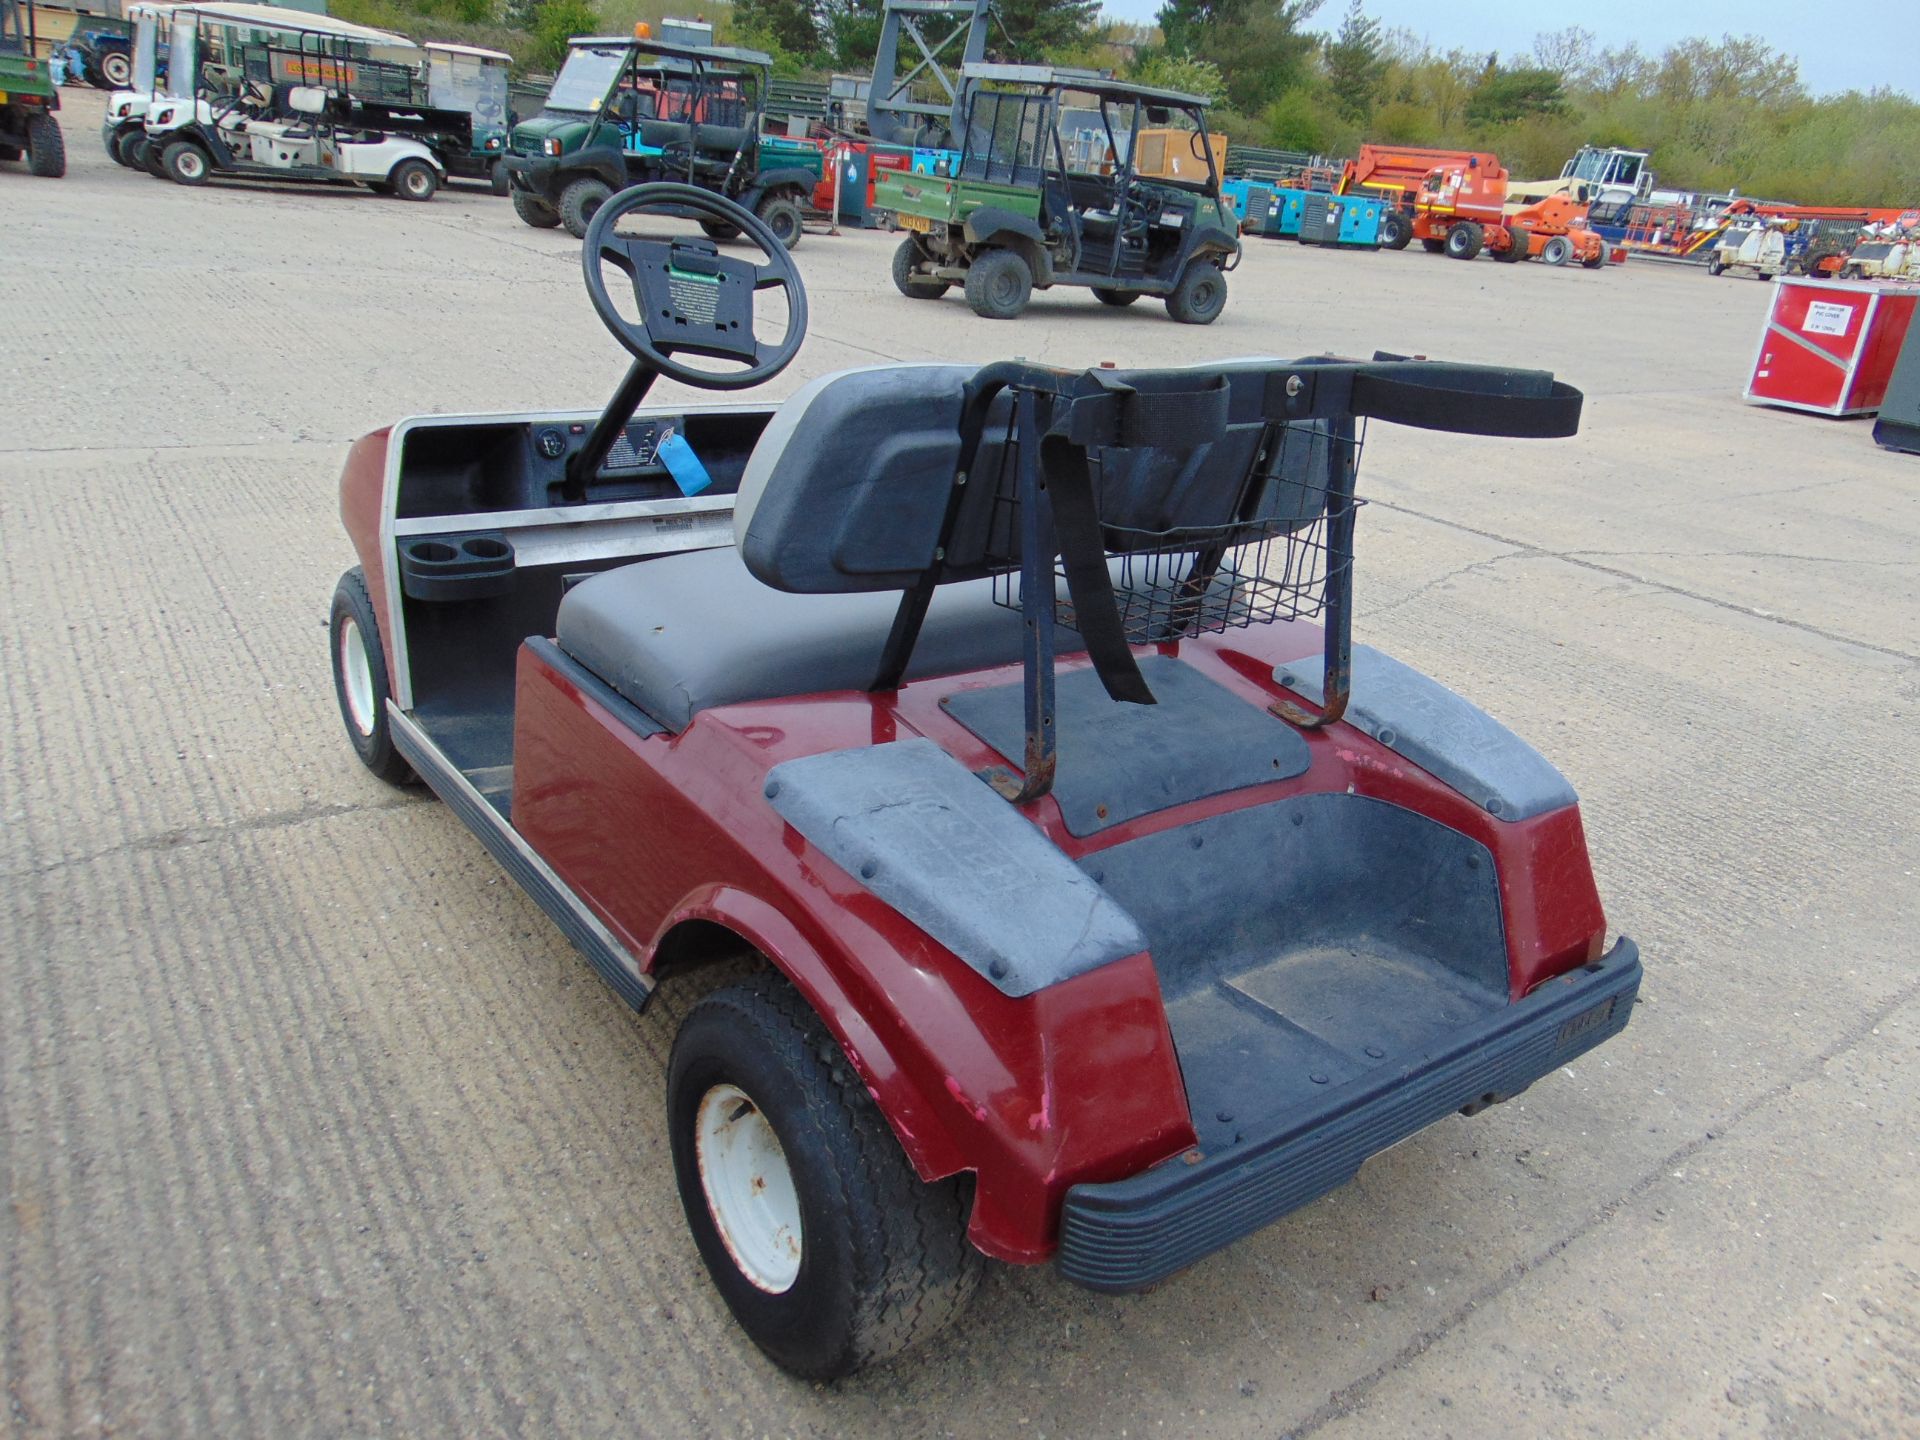 Club Car Petrol Engine Golf Cart - Image 9 of 11